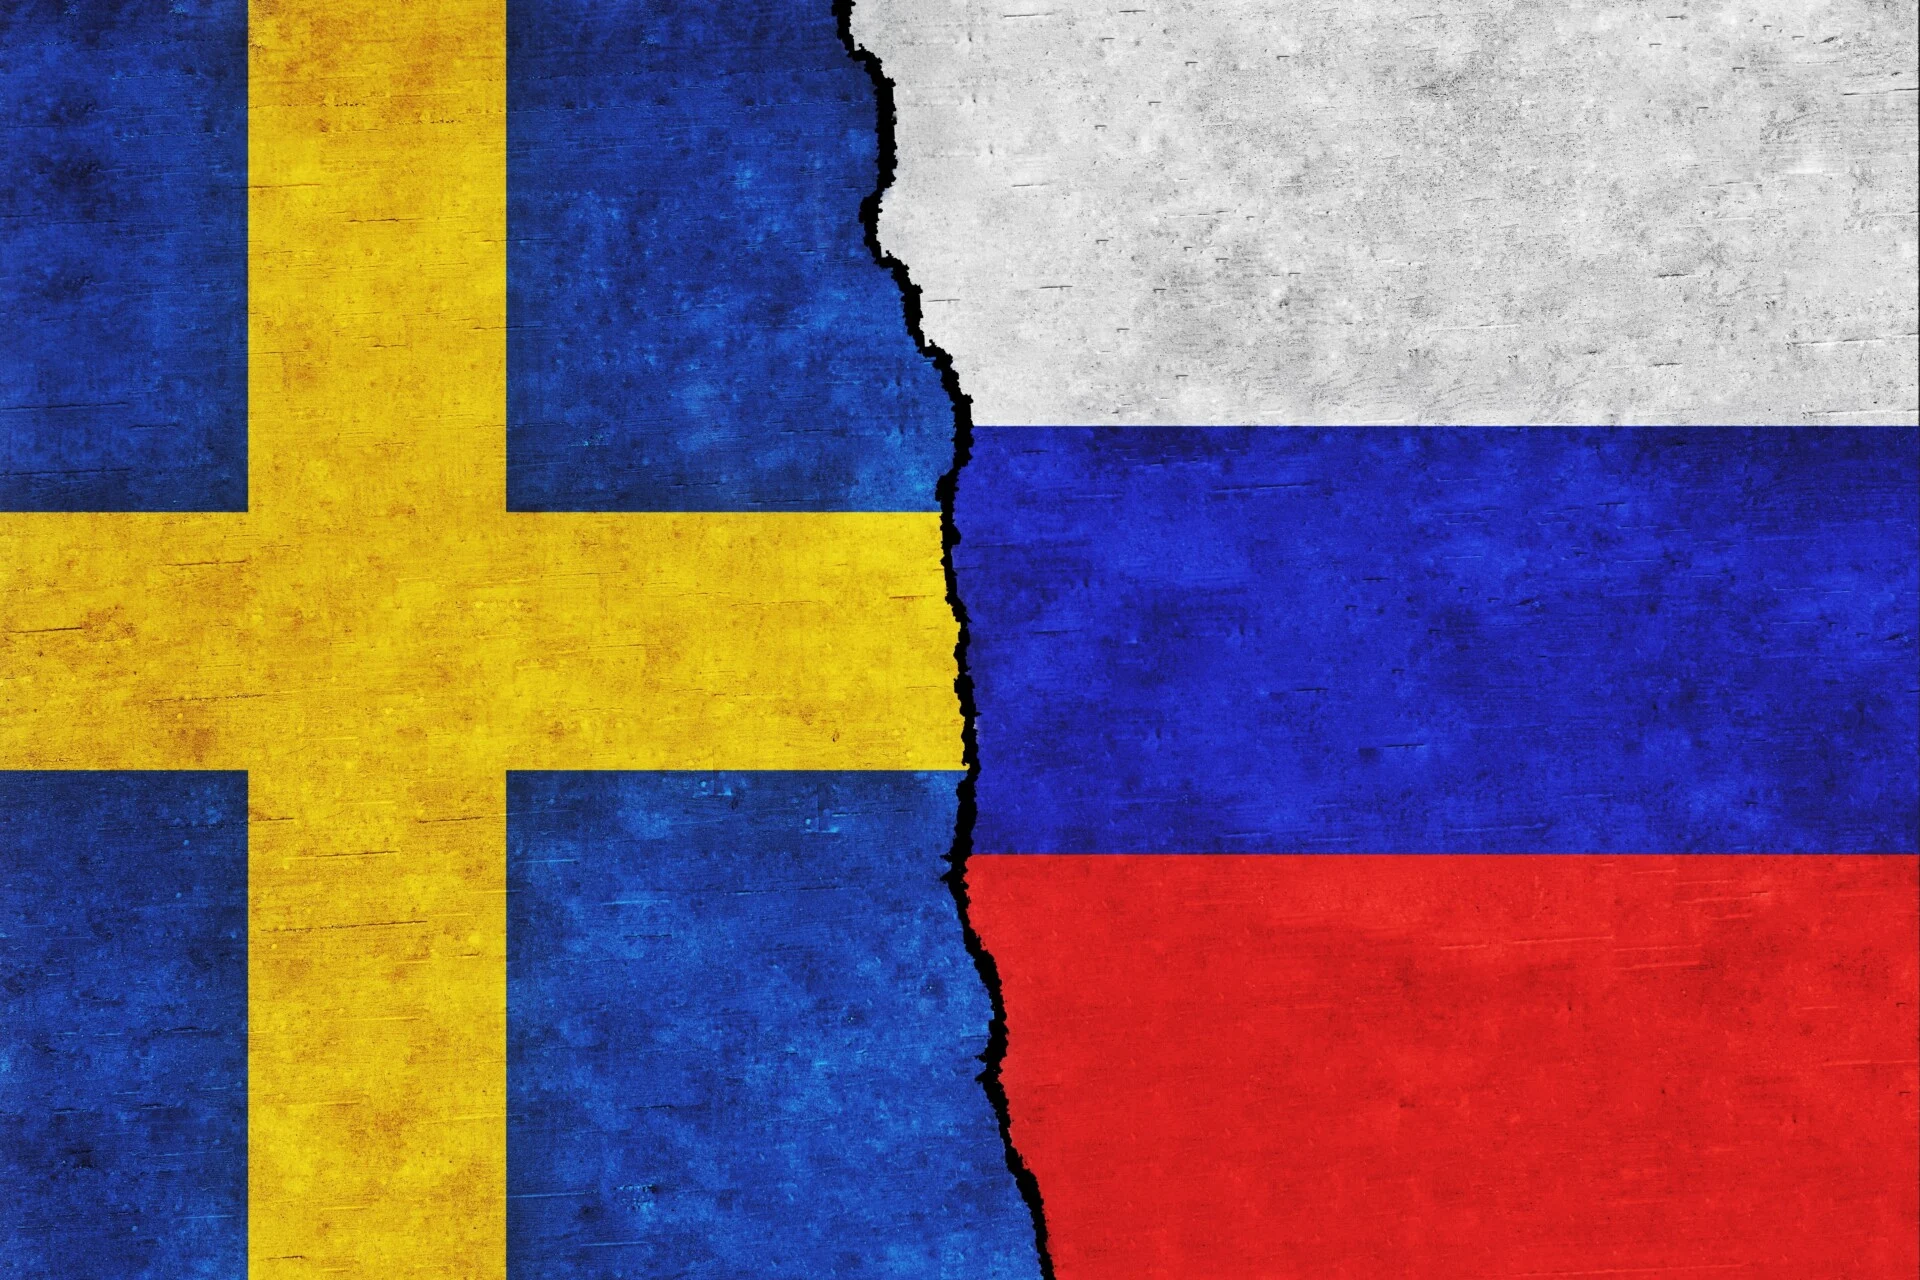 Σουηδικές υπηρεσίες πληροφοριών: Προειδοποιούν για ρωσική απειλή